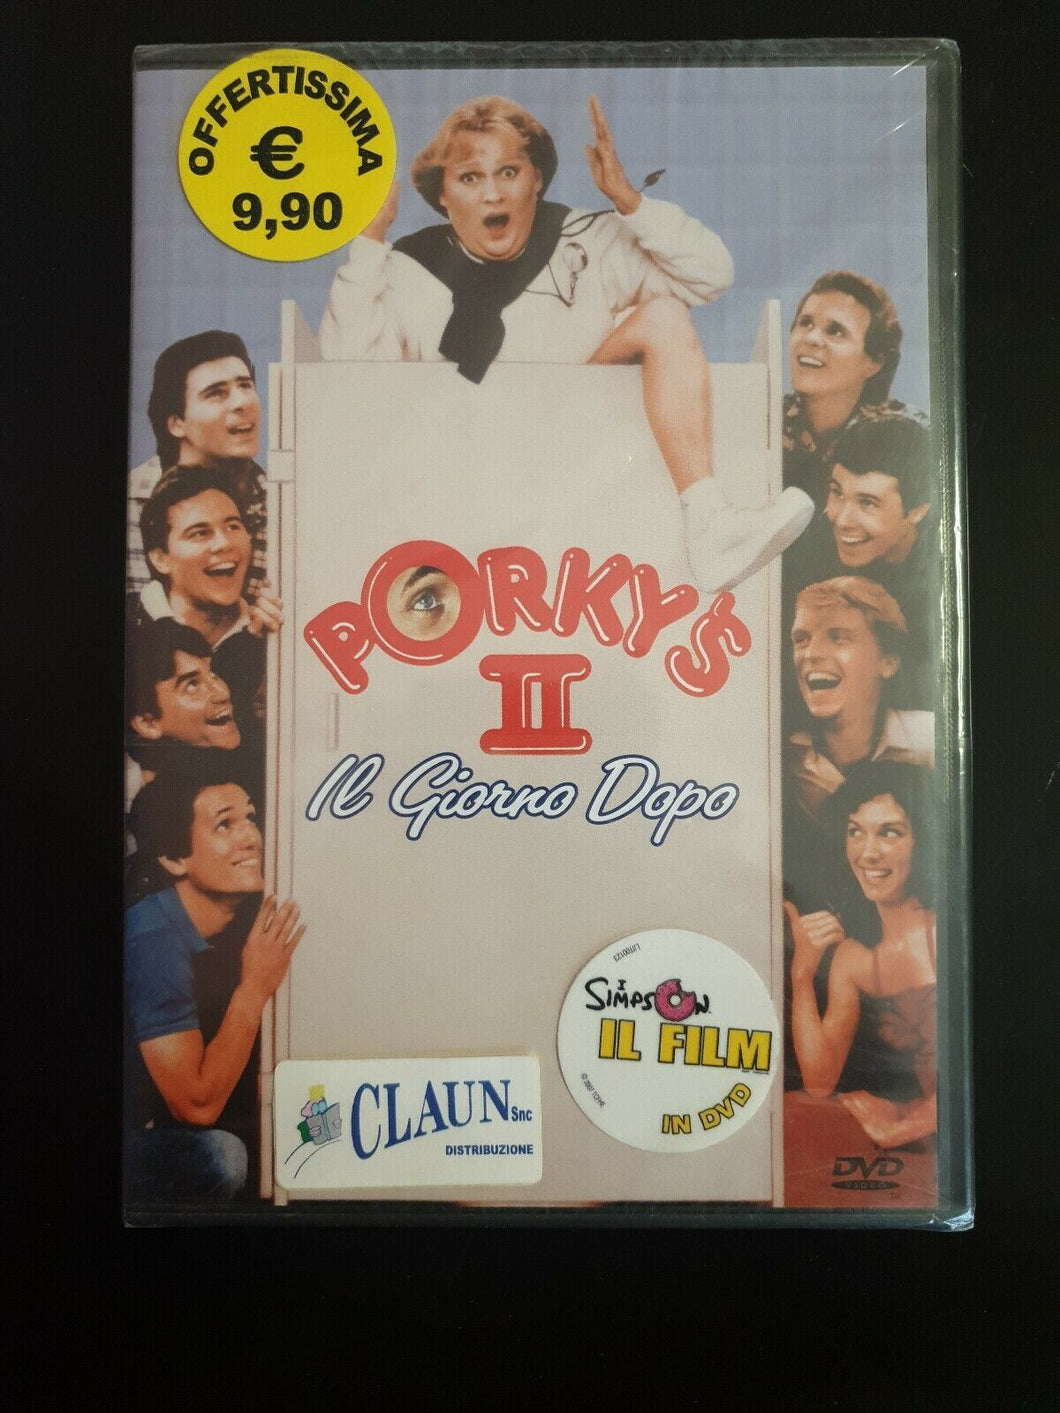 Porky's II: il giorno dopo (1983) DVD Nuovo